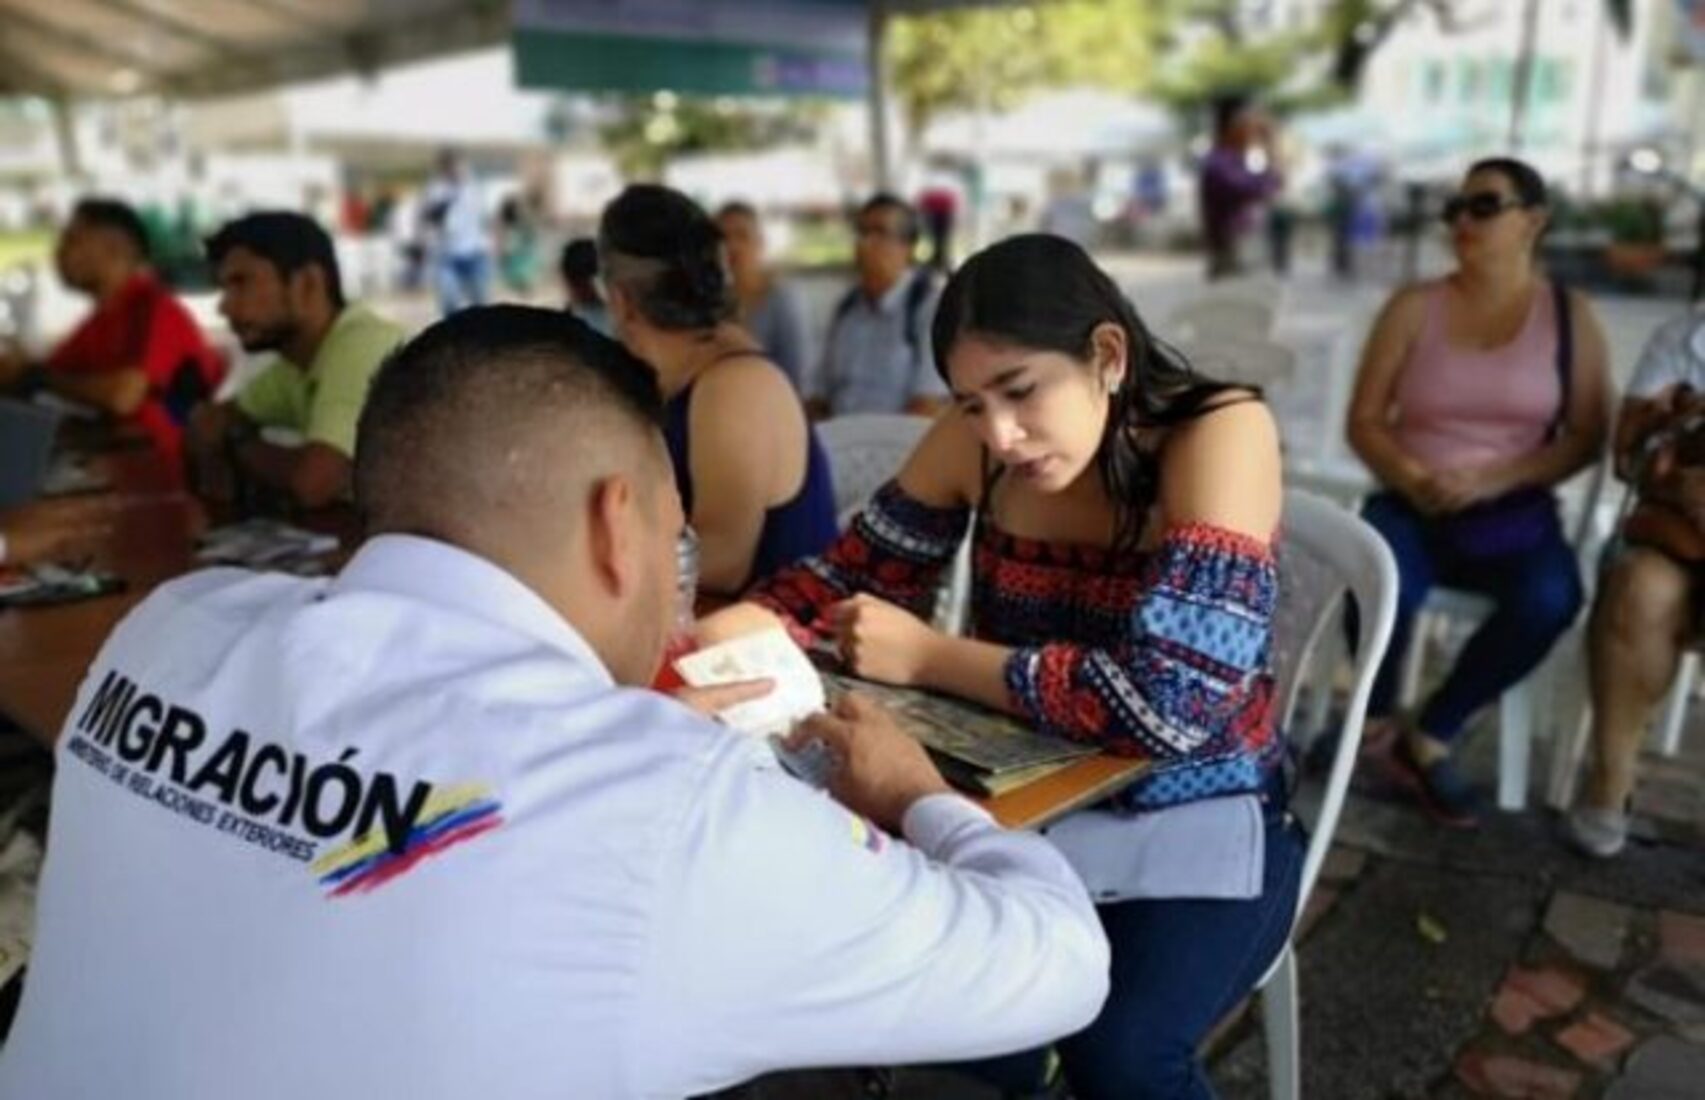 Al menos 14,69 % de los colombianos en Cúcuta considera positiva la migración venezolana